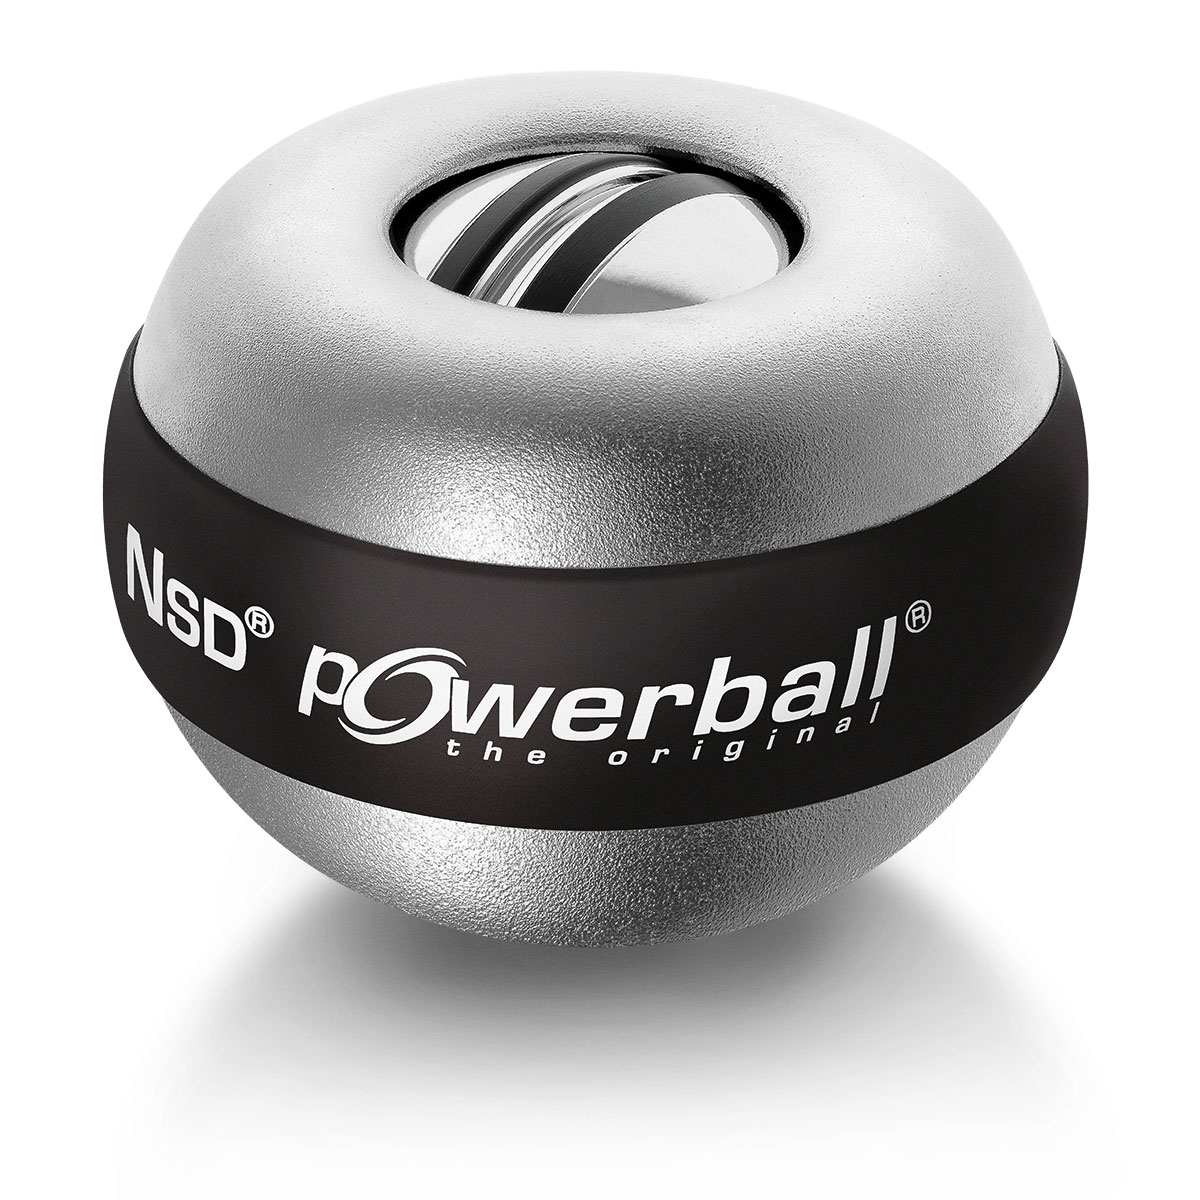 Powerball Der Große  